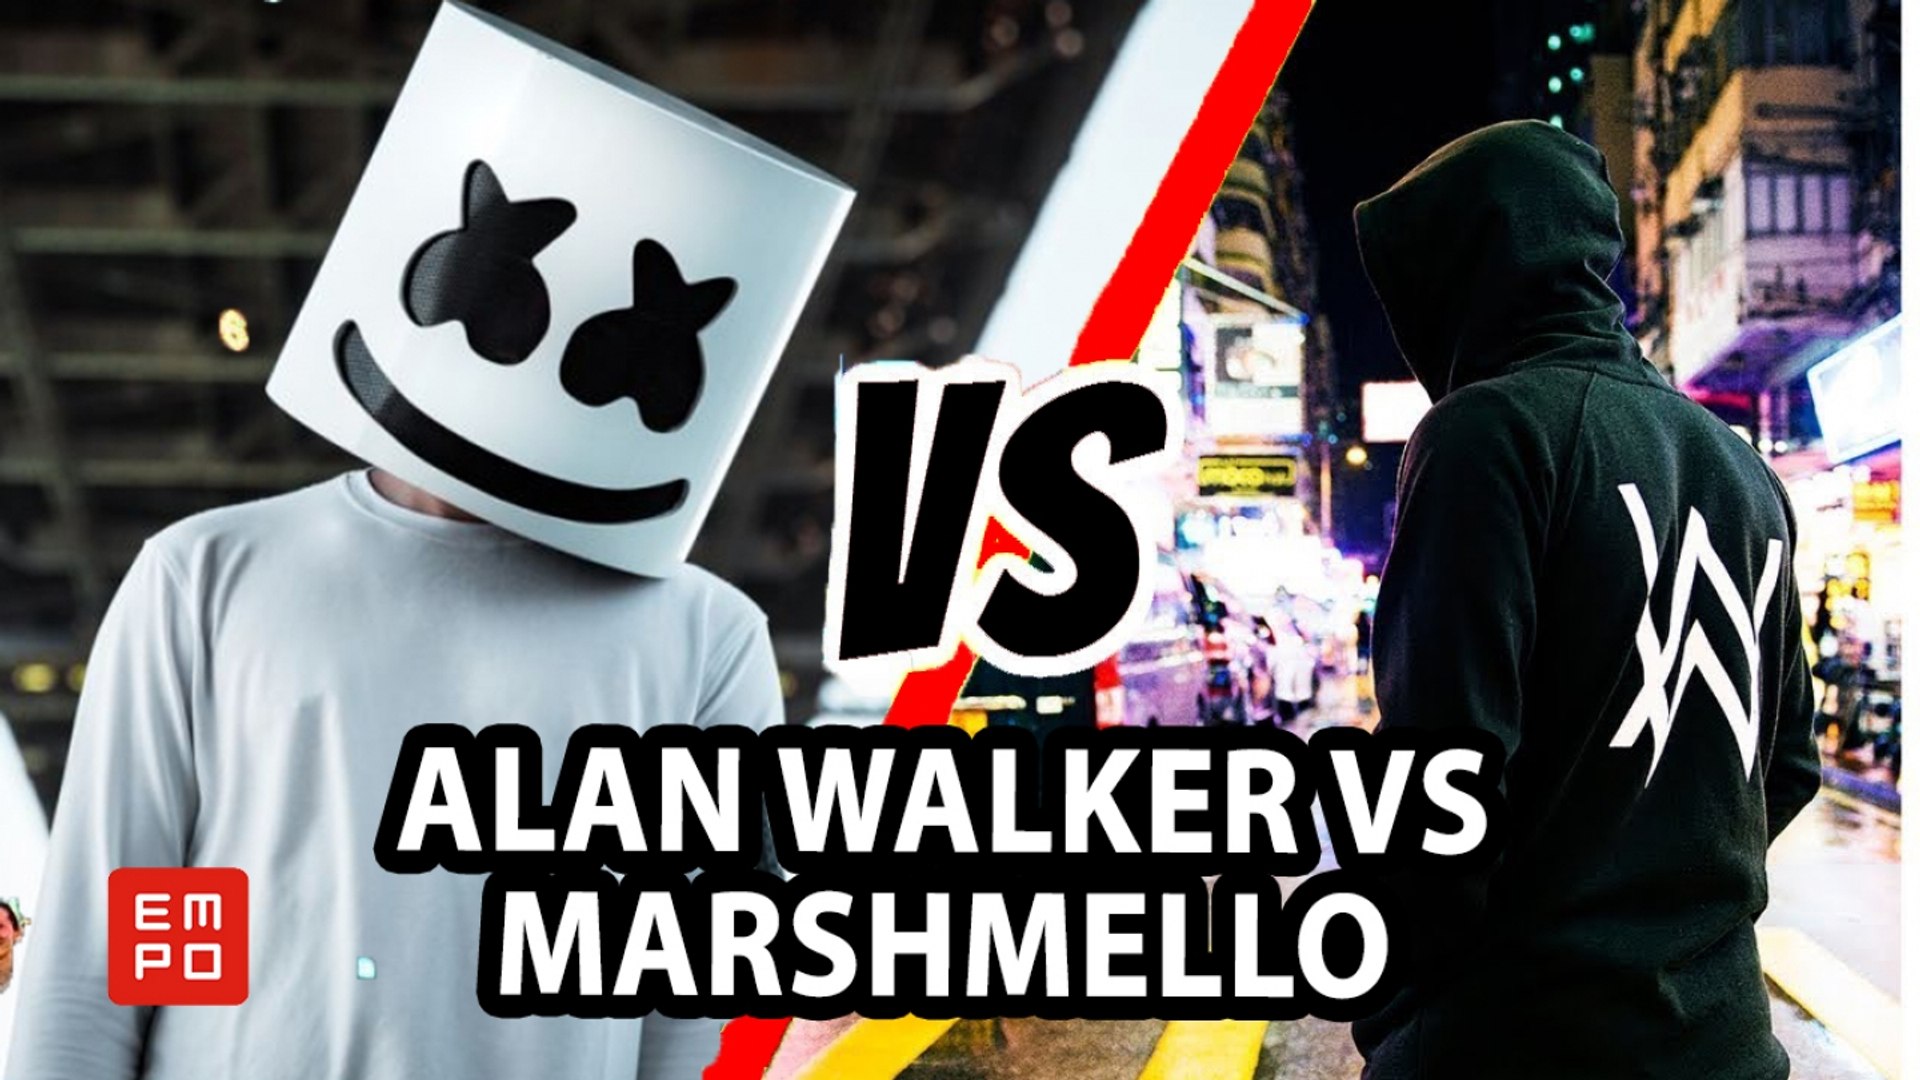 ALAN WALKER VS MARSHMELLO | ¿LA MEJOR MÚSICA ELECTRÓNICA DE ALAN WALKER Y  MARSHMELLO? - Vidéo Dailymotion